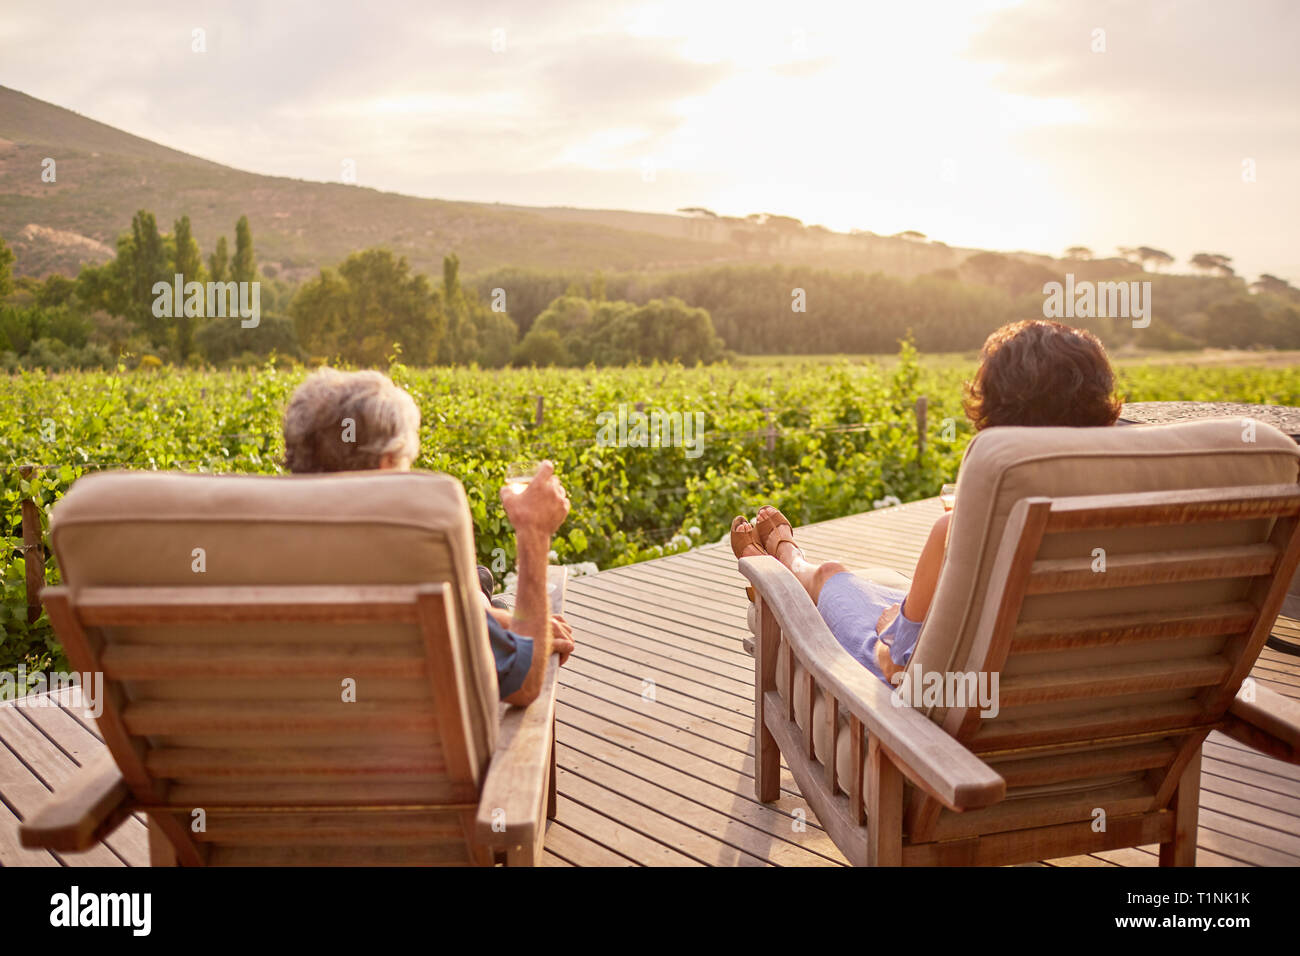 Par relajarse, beber vino en sunny, complejo idílico patio Foto de stock